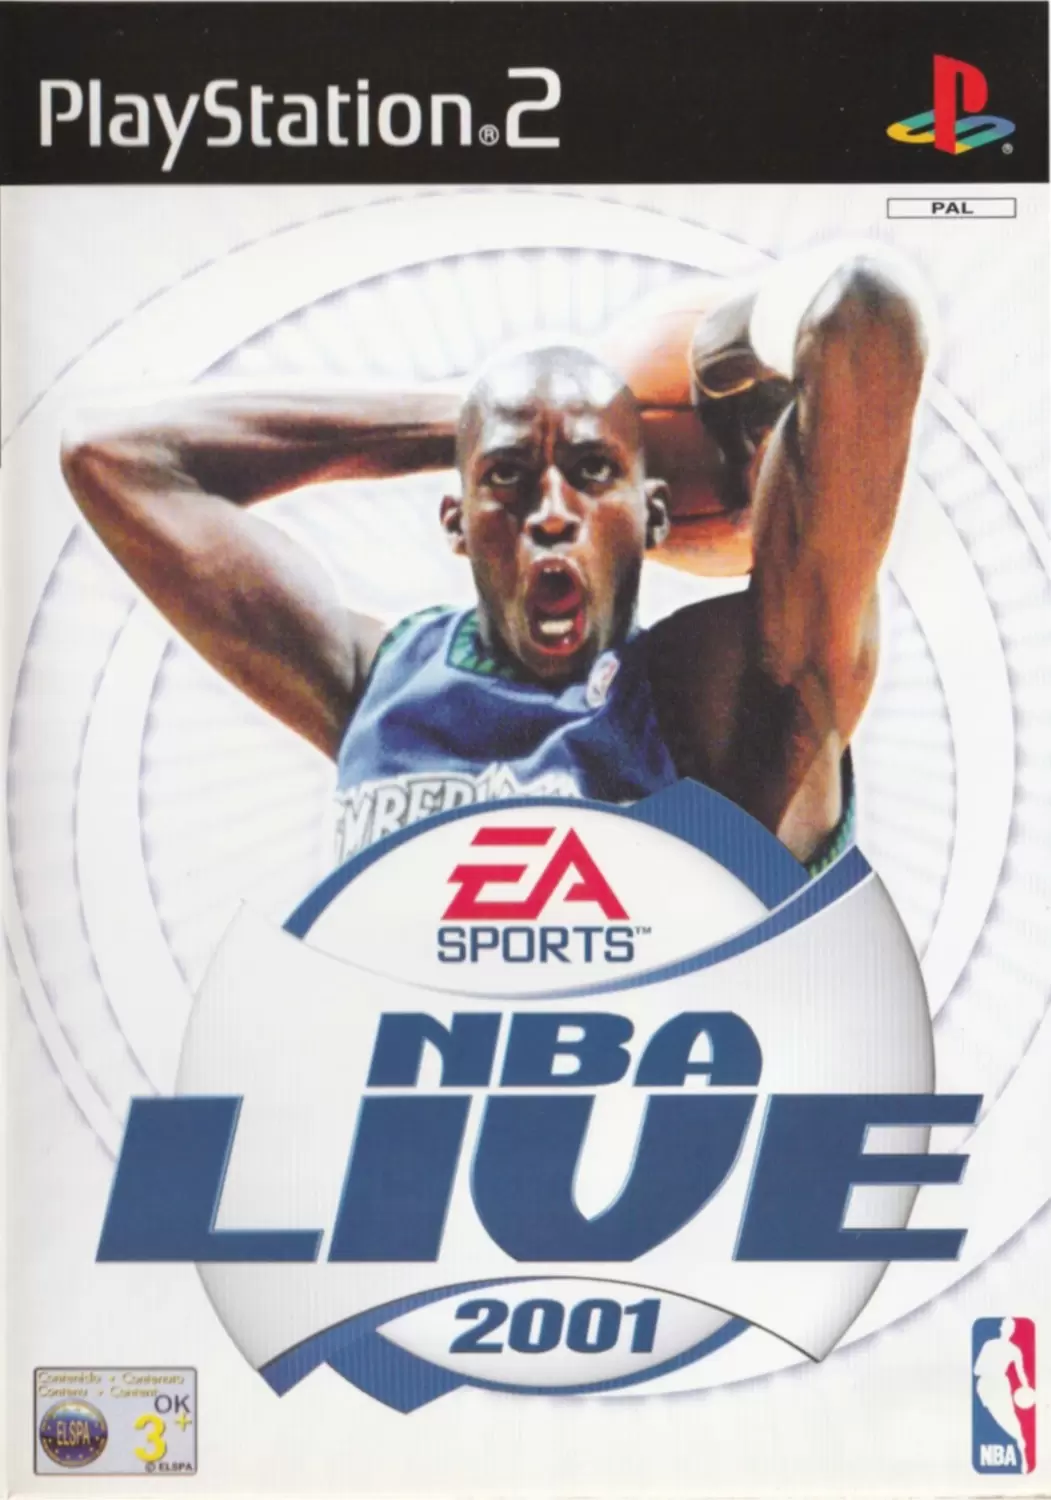 PS2 Games - NBA Live 2001